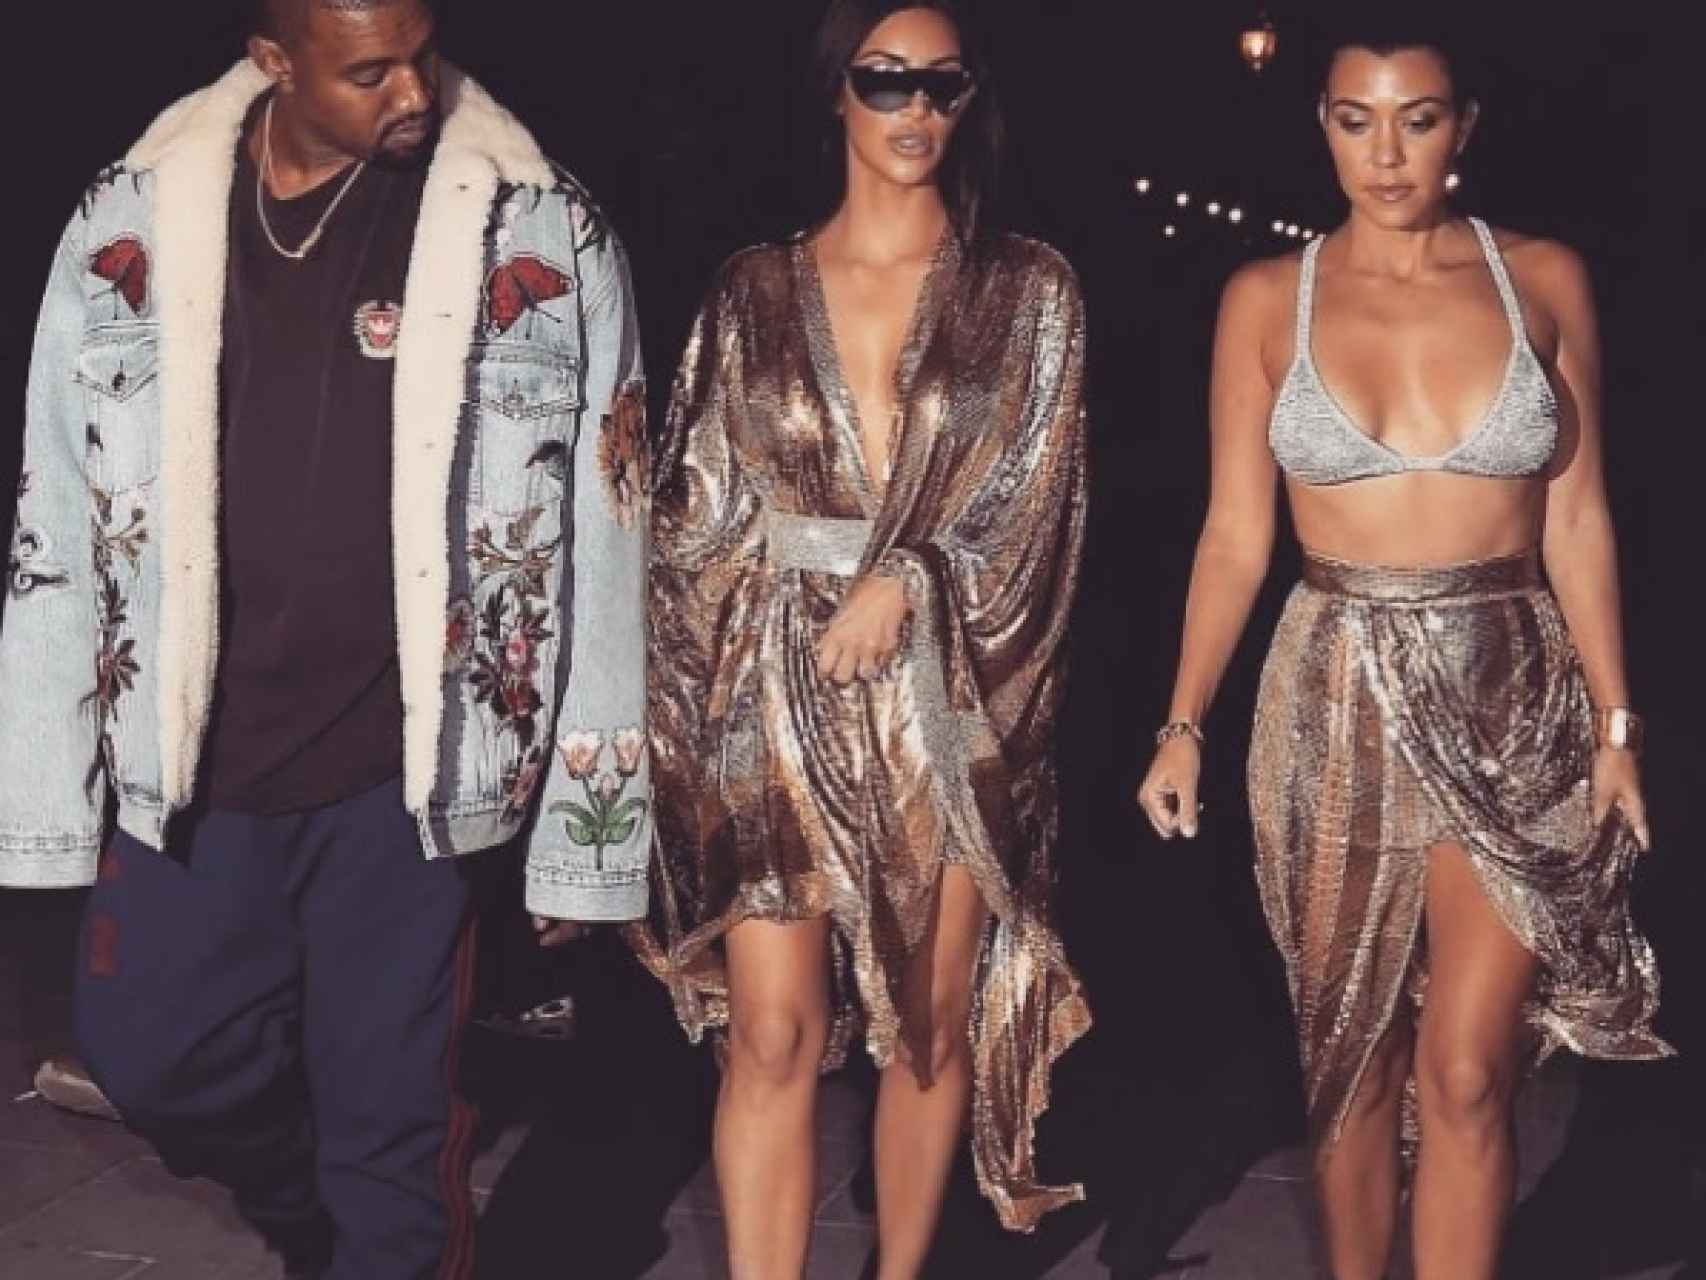 Kanye West, Kim y Kourtney Kardashian por las calles de París la noche anterior al robo.